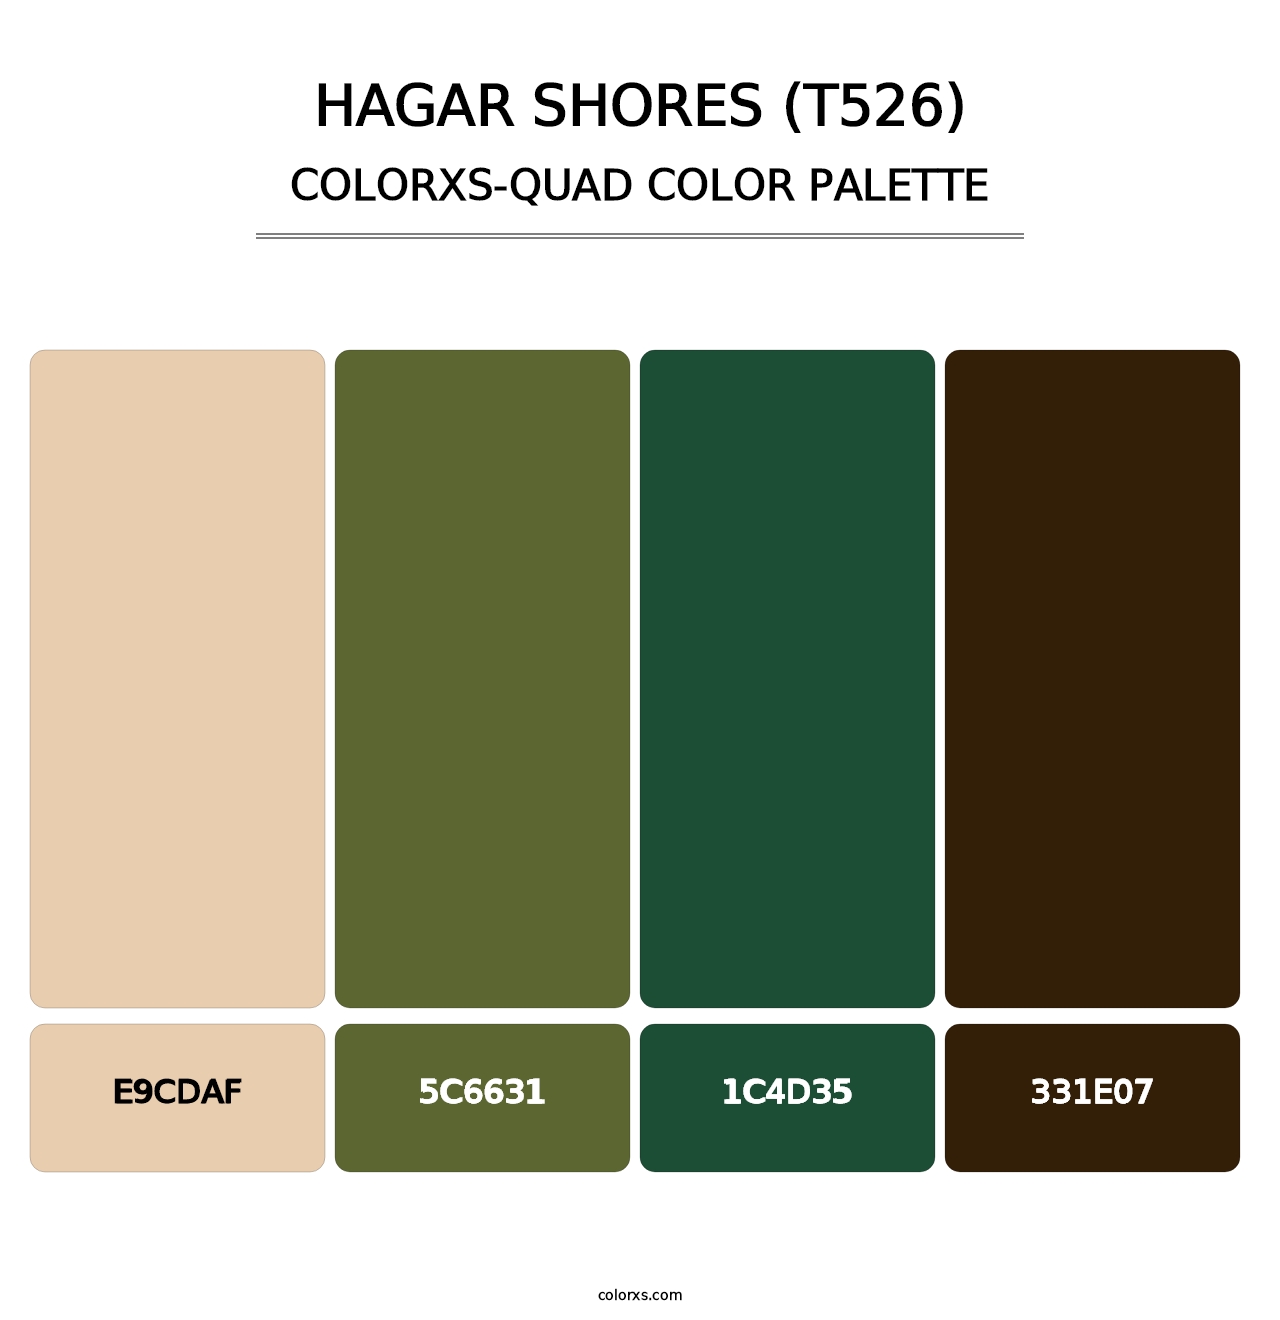 Hagar Shores (T526) - Colorxs Quad Palette